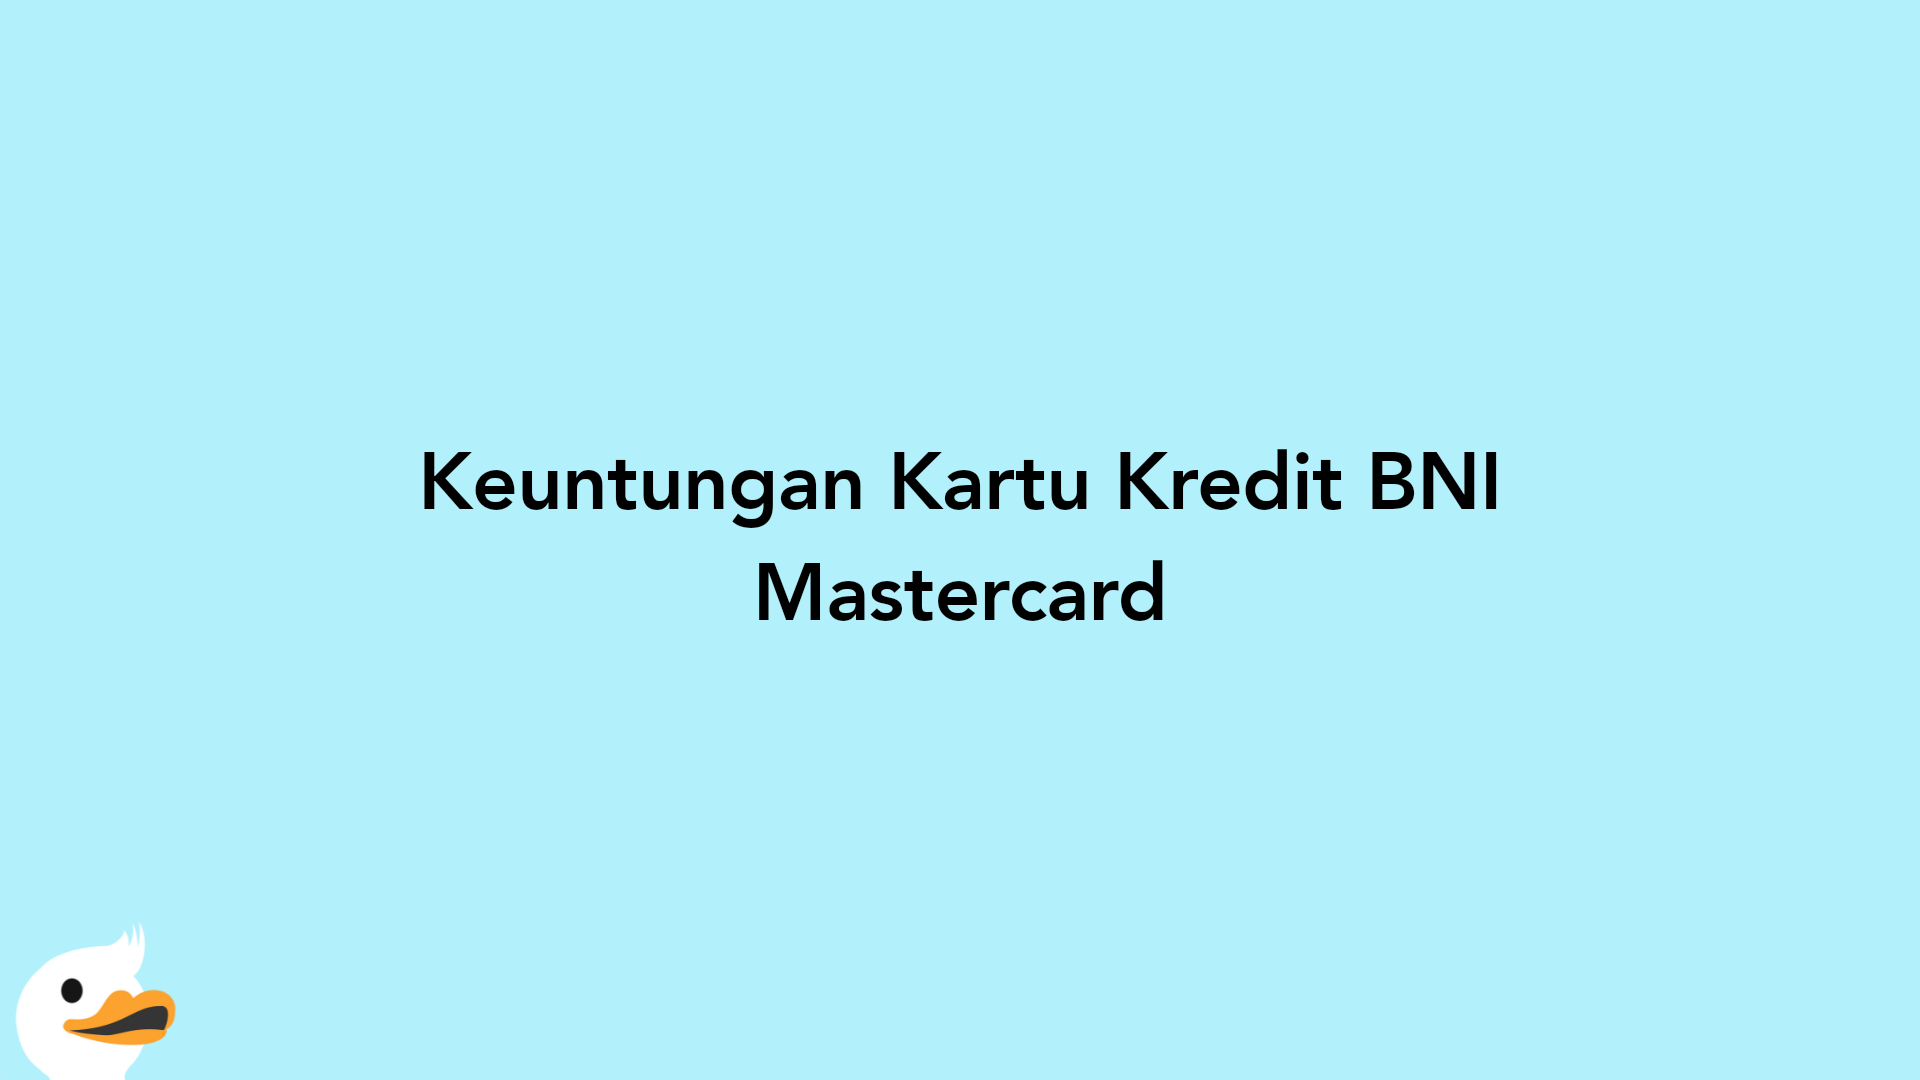 Keuntungan Kartu Kredit BNI Mastercard